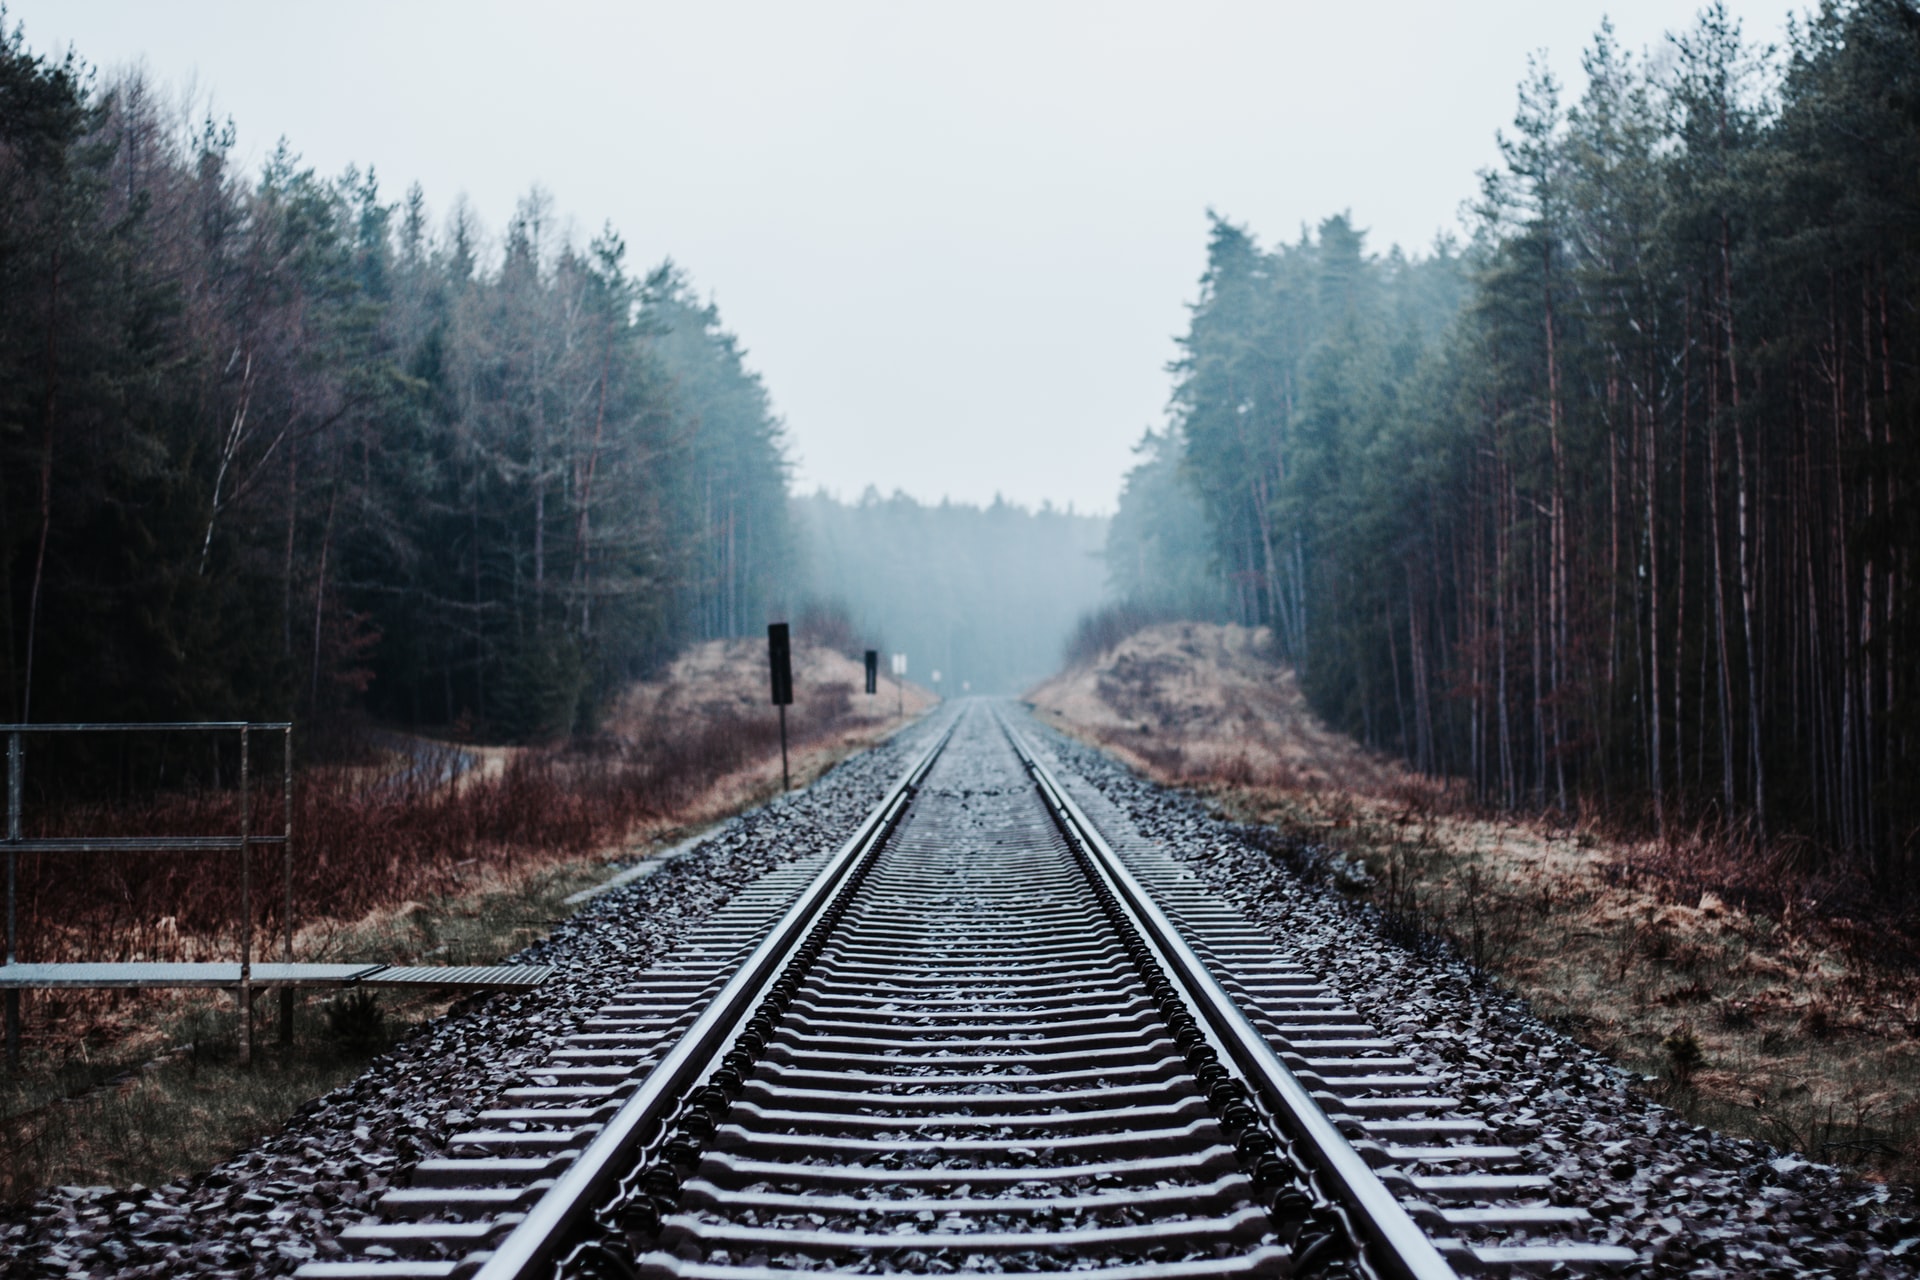 Photo of train tracks by Julian Hochgesang on Unsplash